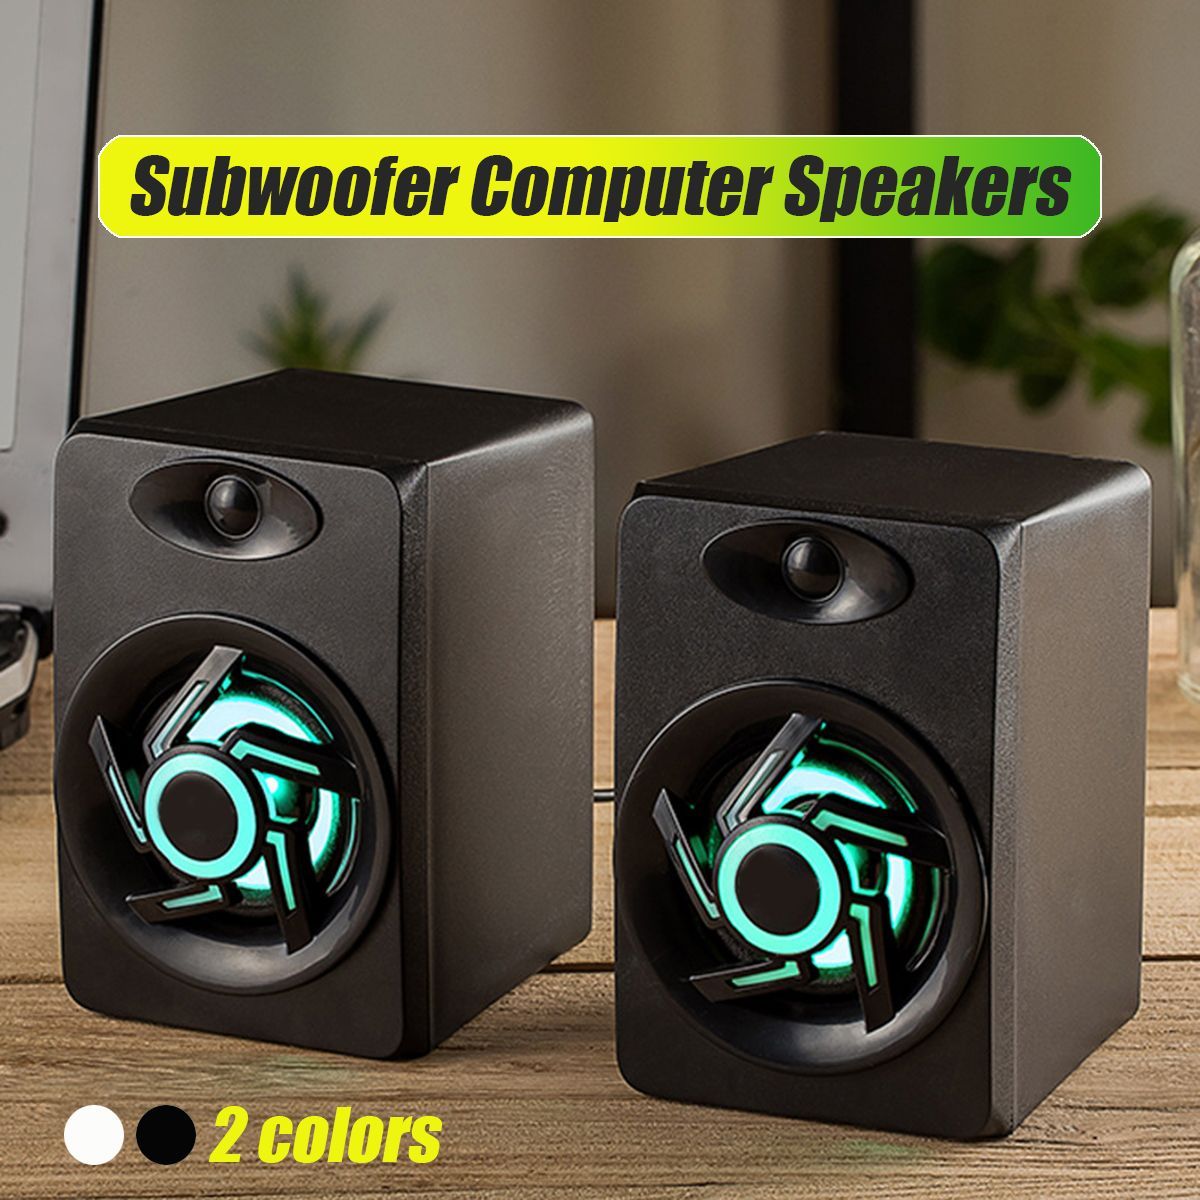 Mini-Portable-USB-Muit-Colorful-Light-Computer-Subwoofer-Speaker-for-Desktop-Laptop-PC-MP3-Cell-phon-1617855